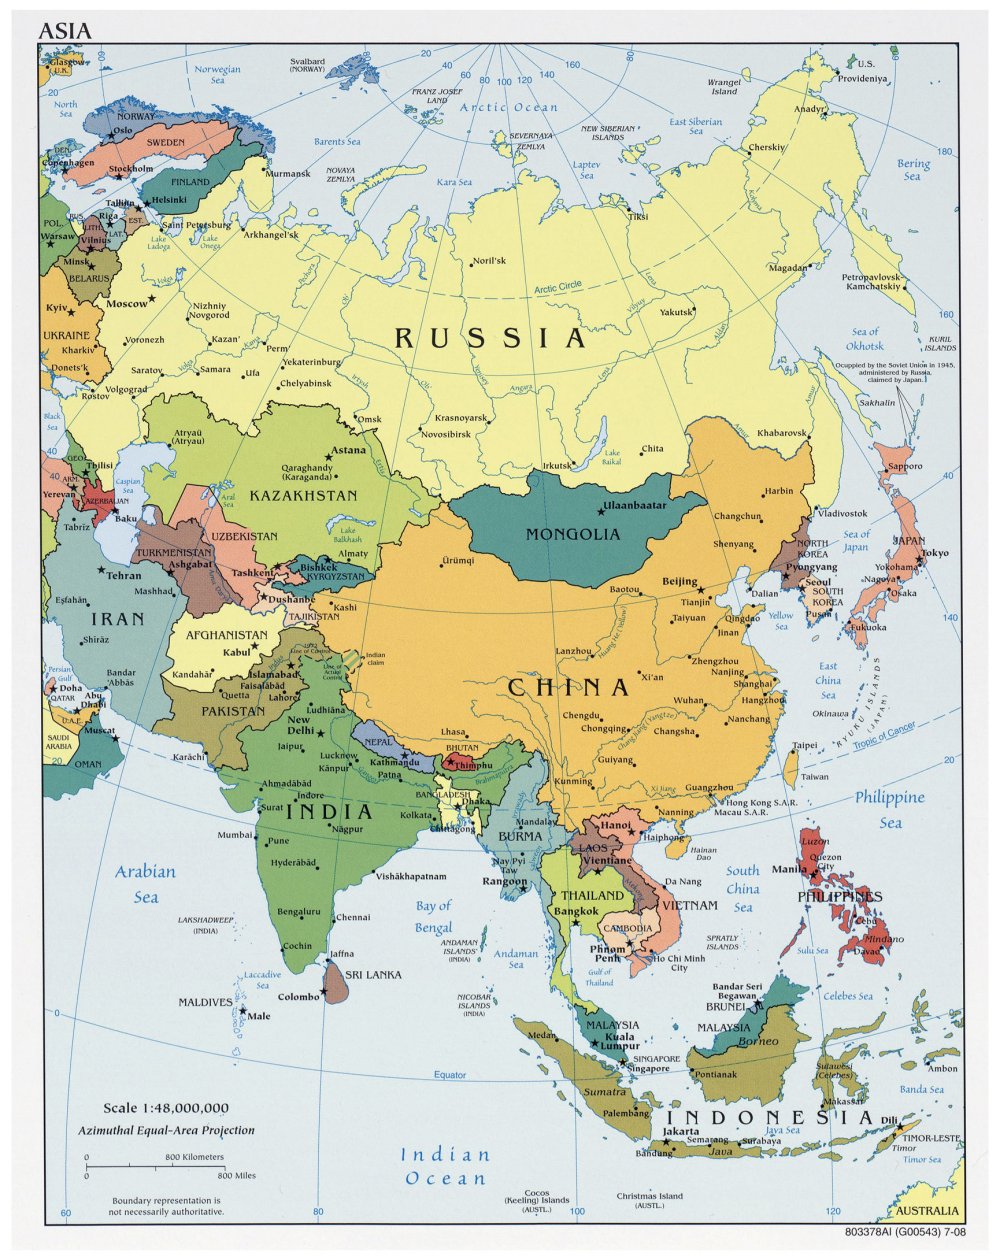 Bản đồ các nước Châu Á năm 2024:
Những năm gần đây, Châu Á đã trở thành một trong những khu vực phát triển năng động nhất trên thế giới. Với những sự thay đổi trong kinh tế và chính trị, bản đồ các nước Châu Á năm 2024 sẽ giúp bạn hiểu rõ hơn về sự phát triển của các đất nước trong khu vực này. Hãy cùng khám phá và tìm hiểu để hiểu rõ hơn về nền kinh tế và văn hóa đặc trưng ở Châu Á.